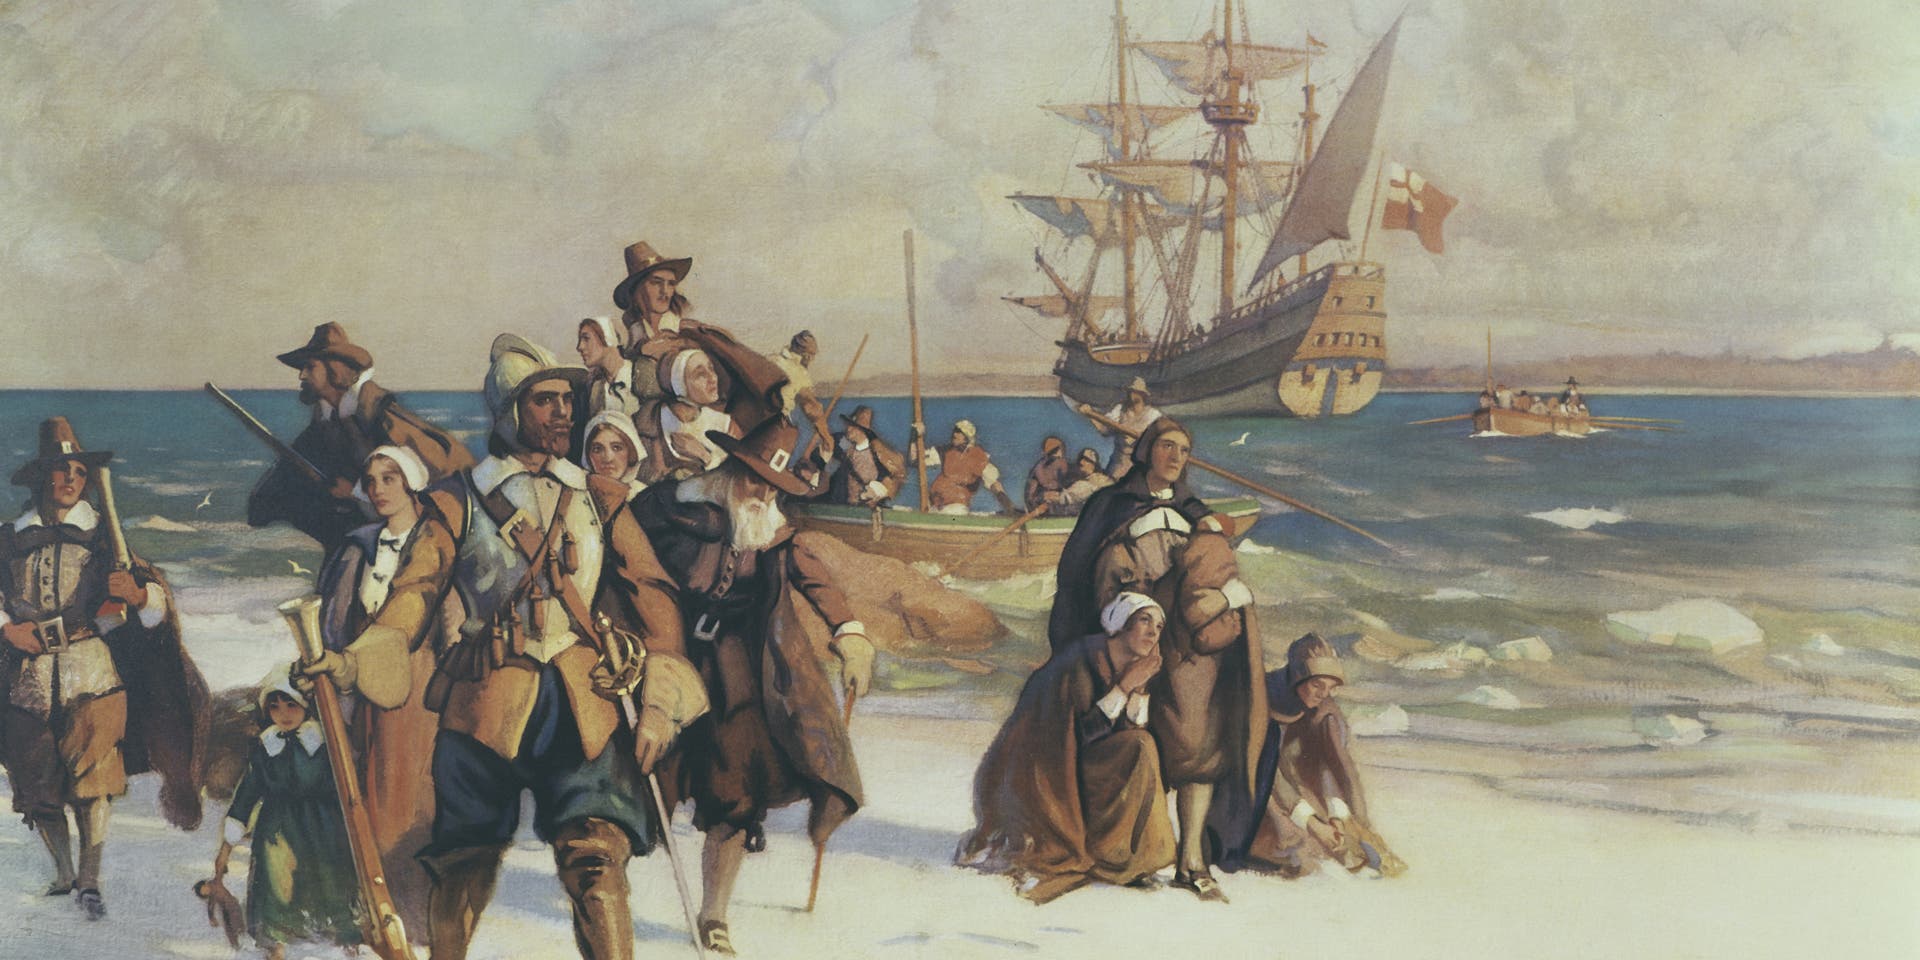 HISTORY: Plymouth Colony